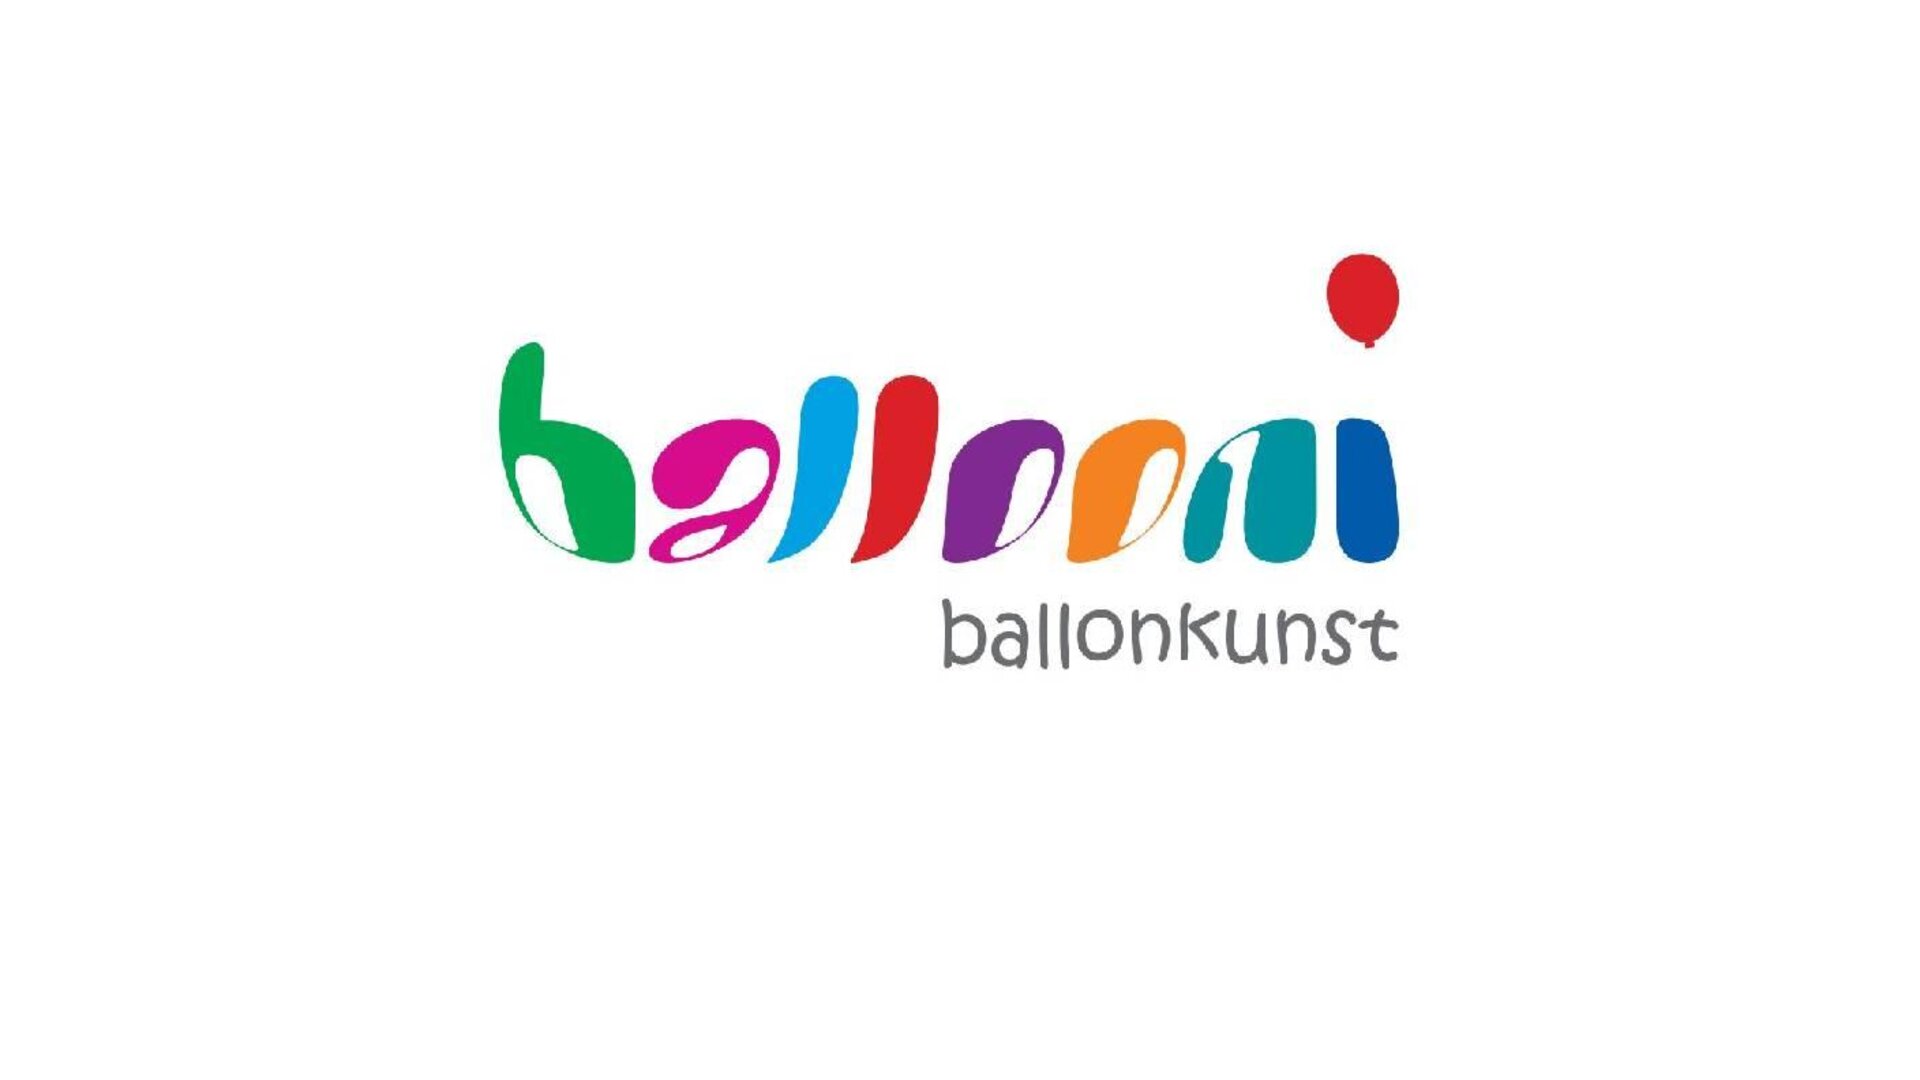 Uli Ballooni Balloonkunst